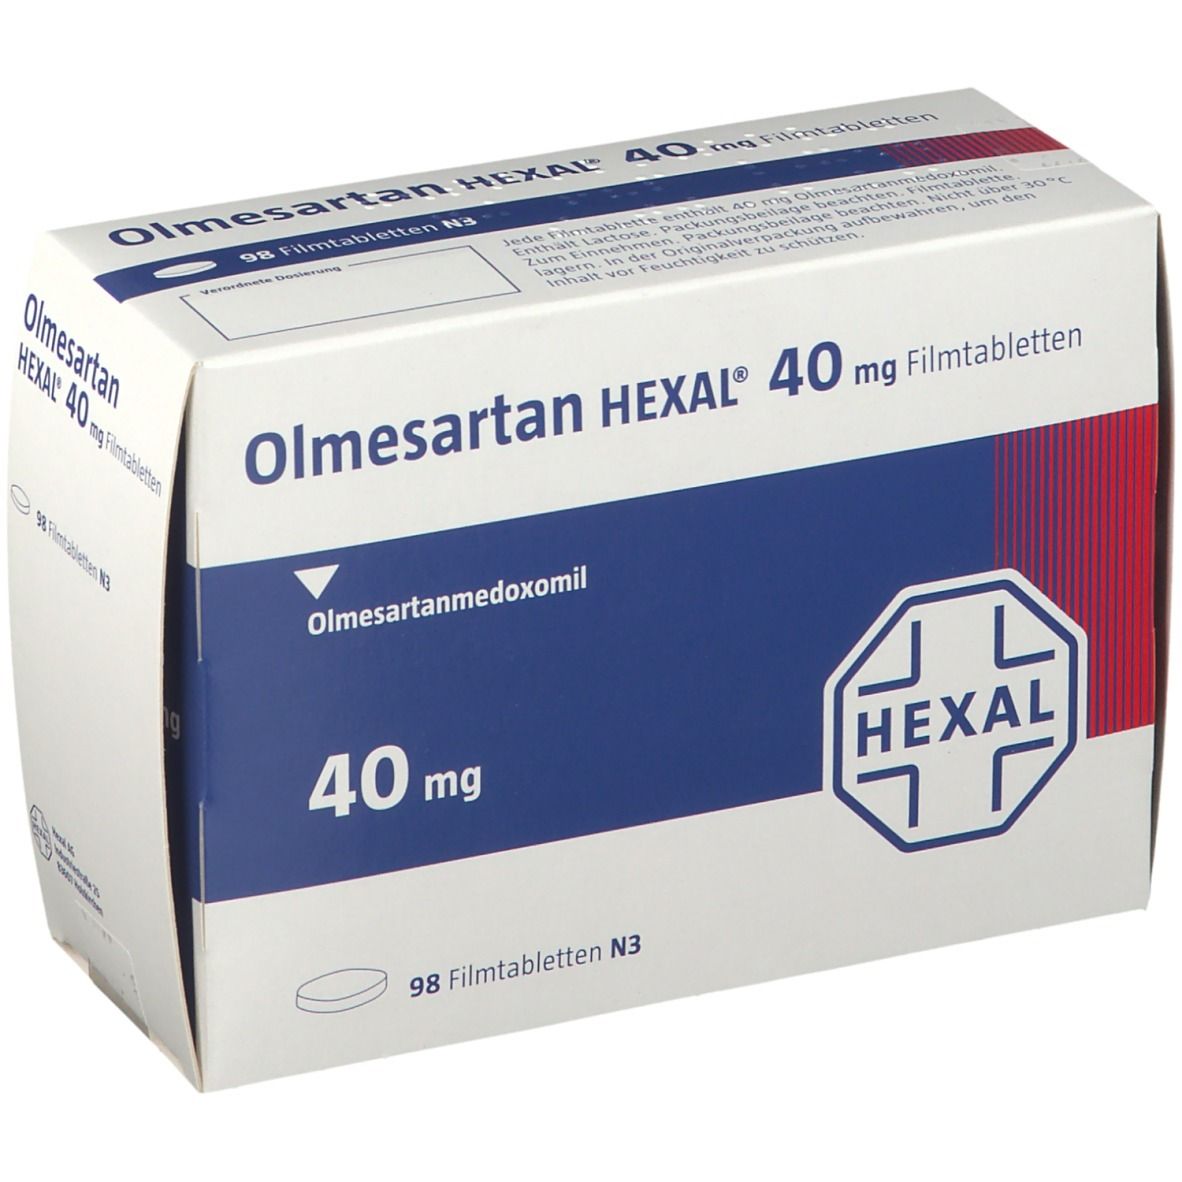 Olmesartan HEXAL® 40 mg